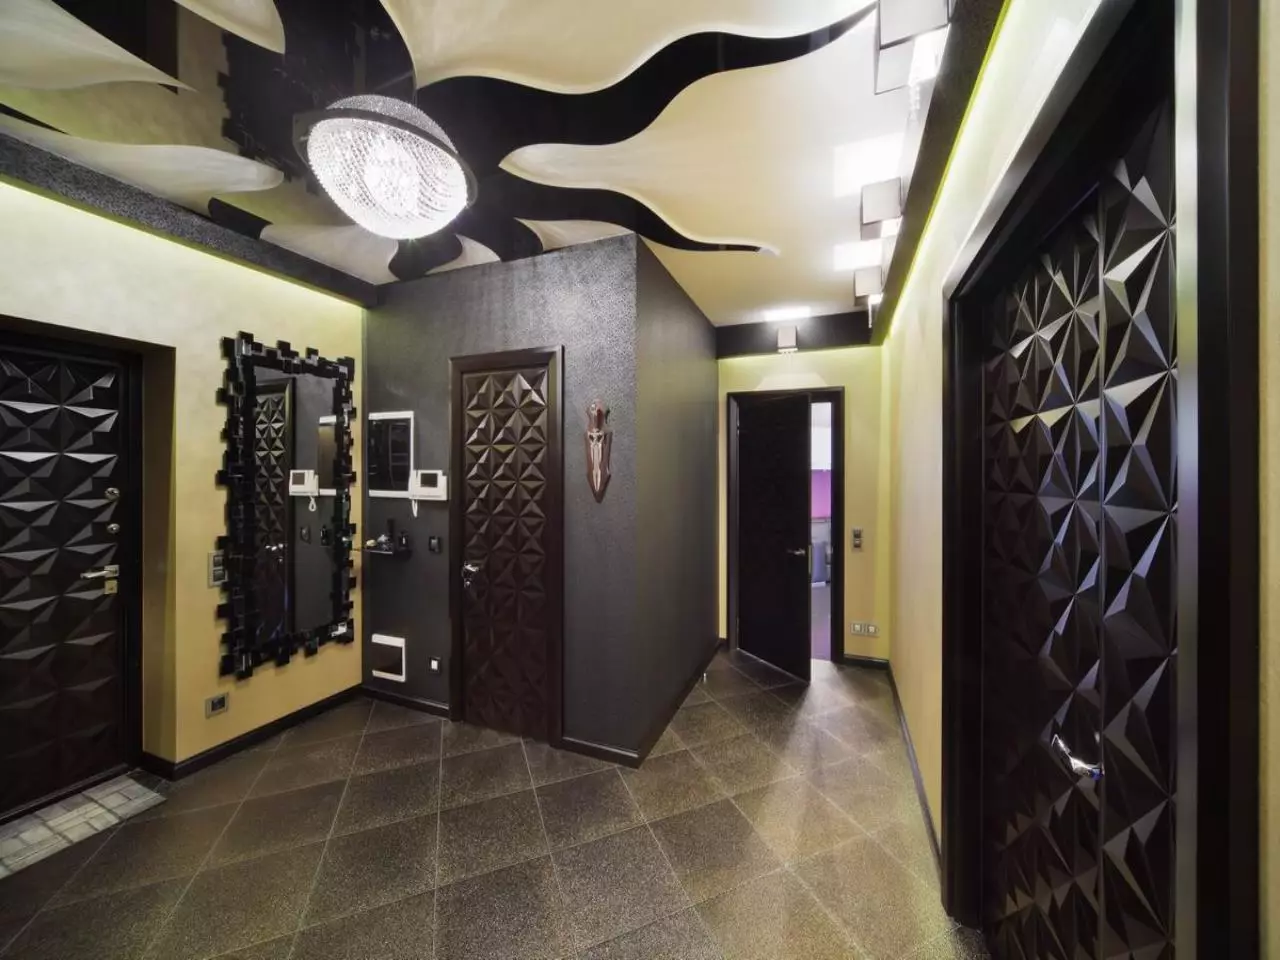 תקרה מתיחה במסדרון (71 תמונות): עיצוב תקרה במסדרון צרים וארוך, אופציות עם אורות נקודה ועיצובים של שתי ברמות בדירה, מינים שחורים ומבריקים 9270_52